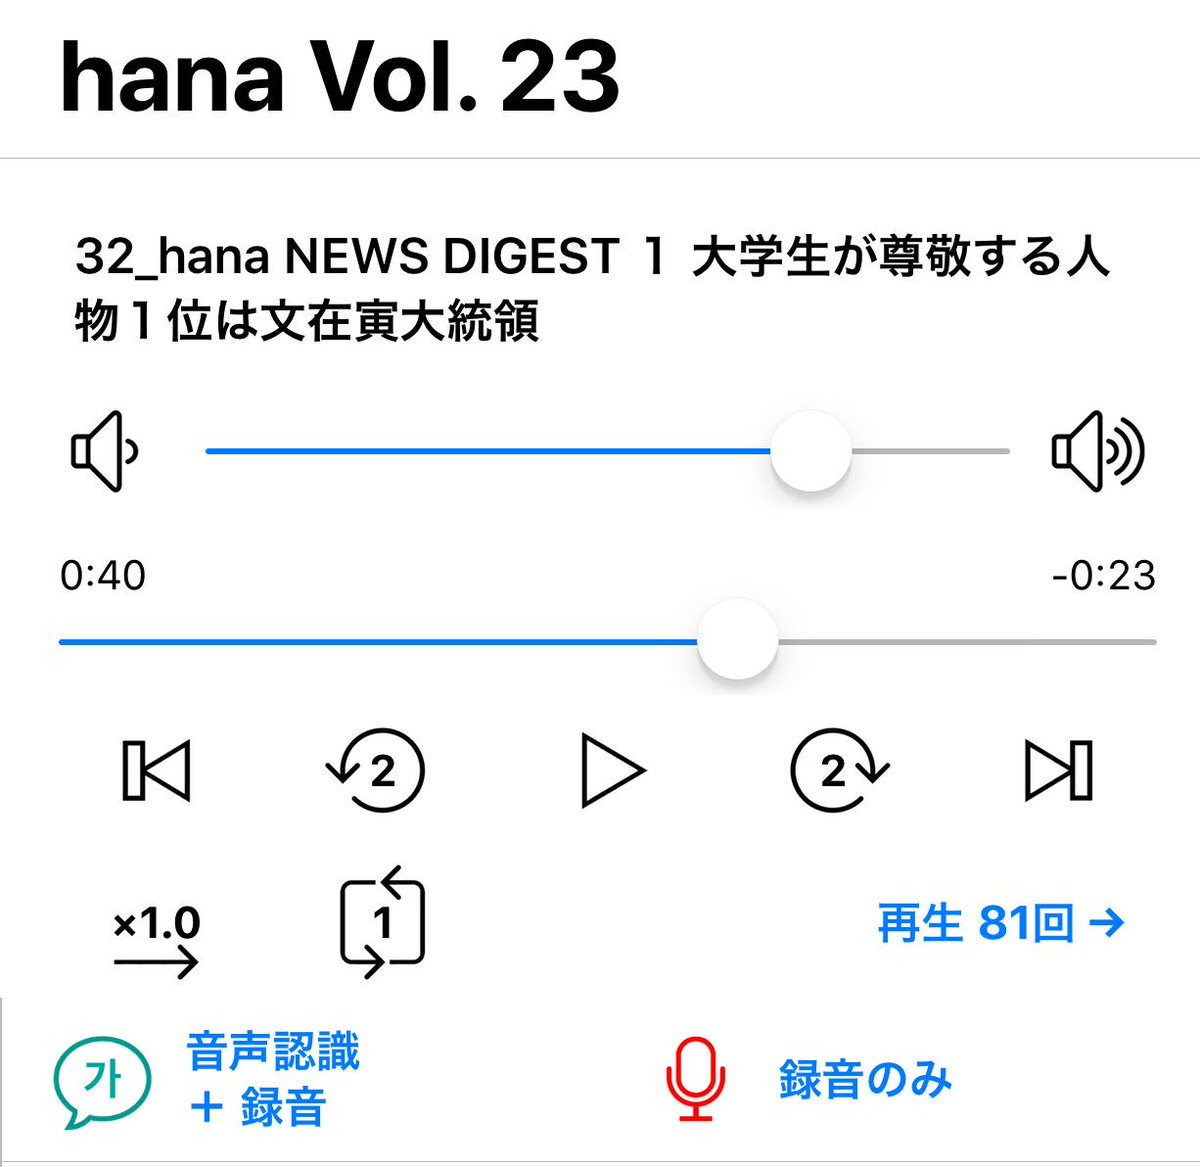 韓国語のhana Hana監修のiphone用語学アプリ作ってます シャドーイング ディクテーション 自分の声の録音 などなど語学学習に使えるアプリです リリーススケジュールなど決まりましたらまたお知らせしますね 楽しみにしててください 語学アプリ